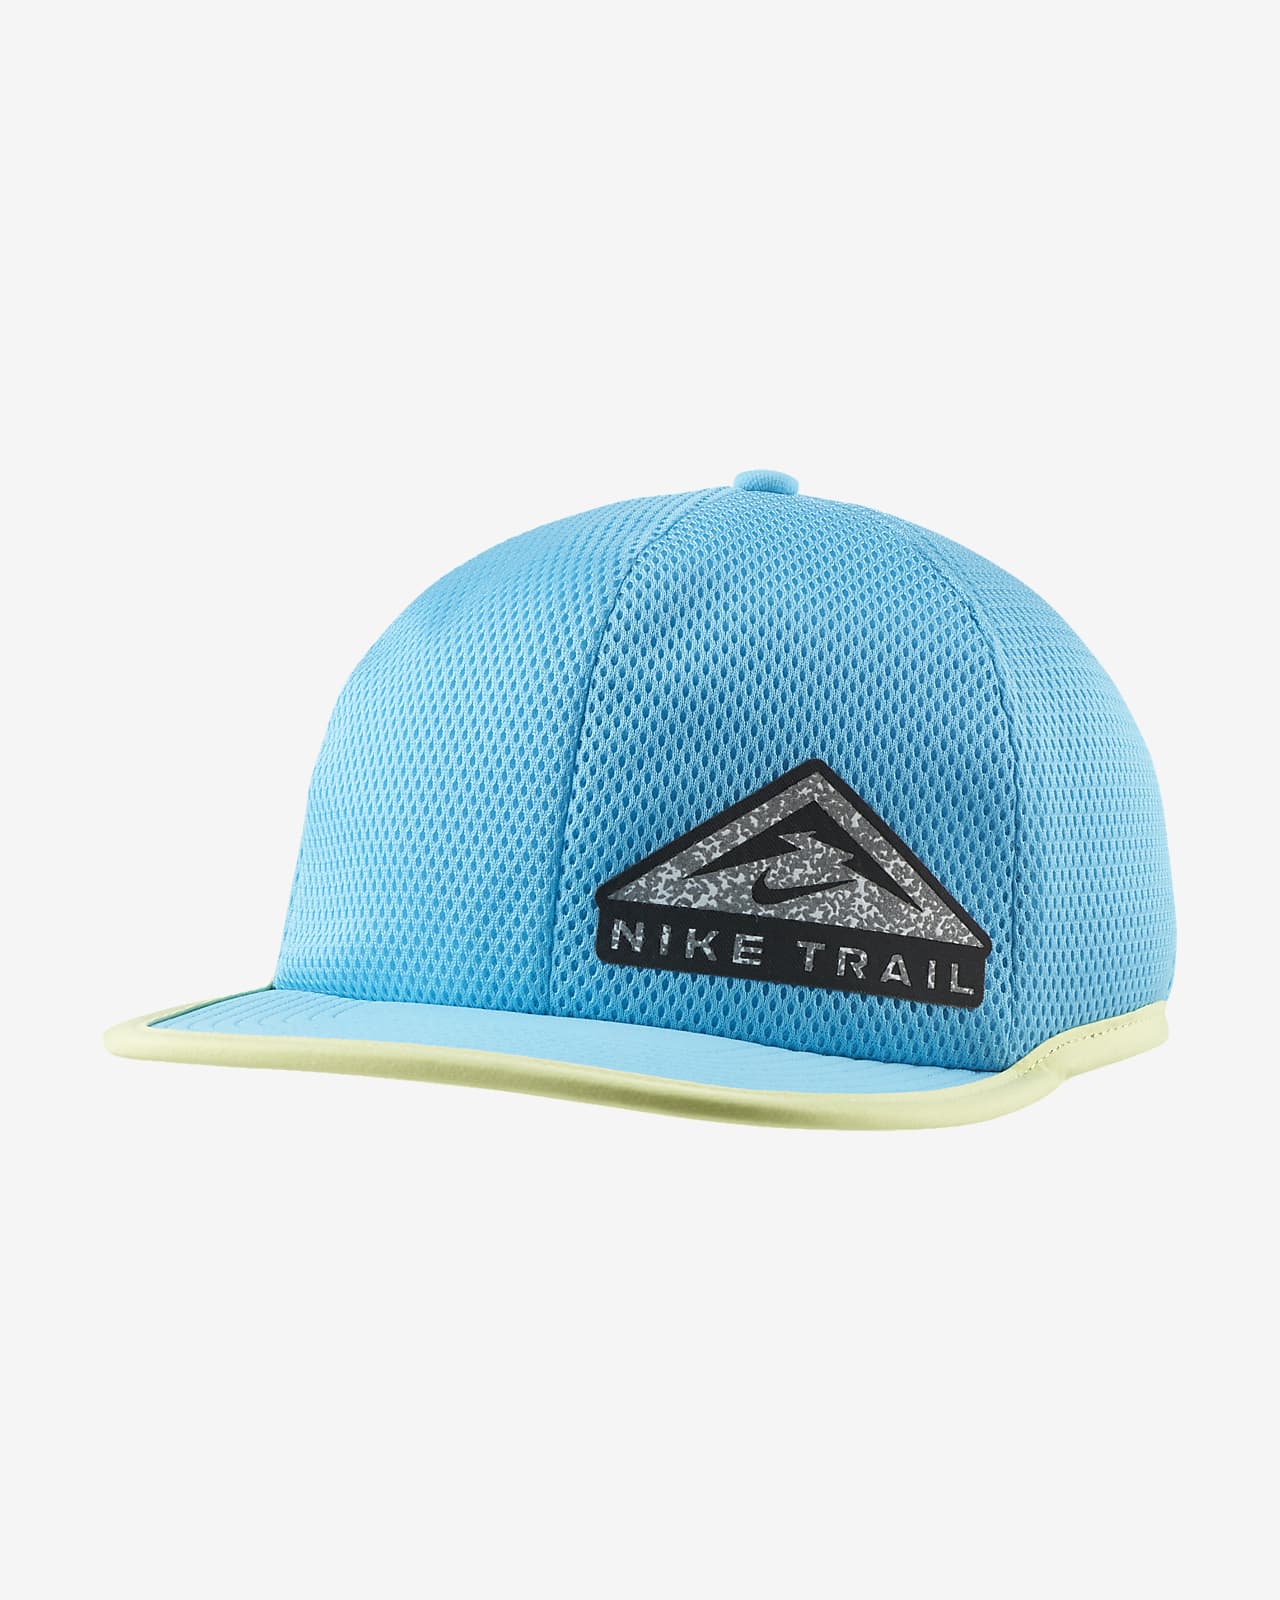 nike trail hat black